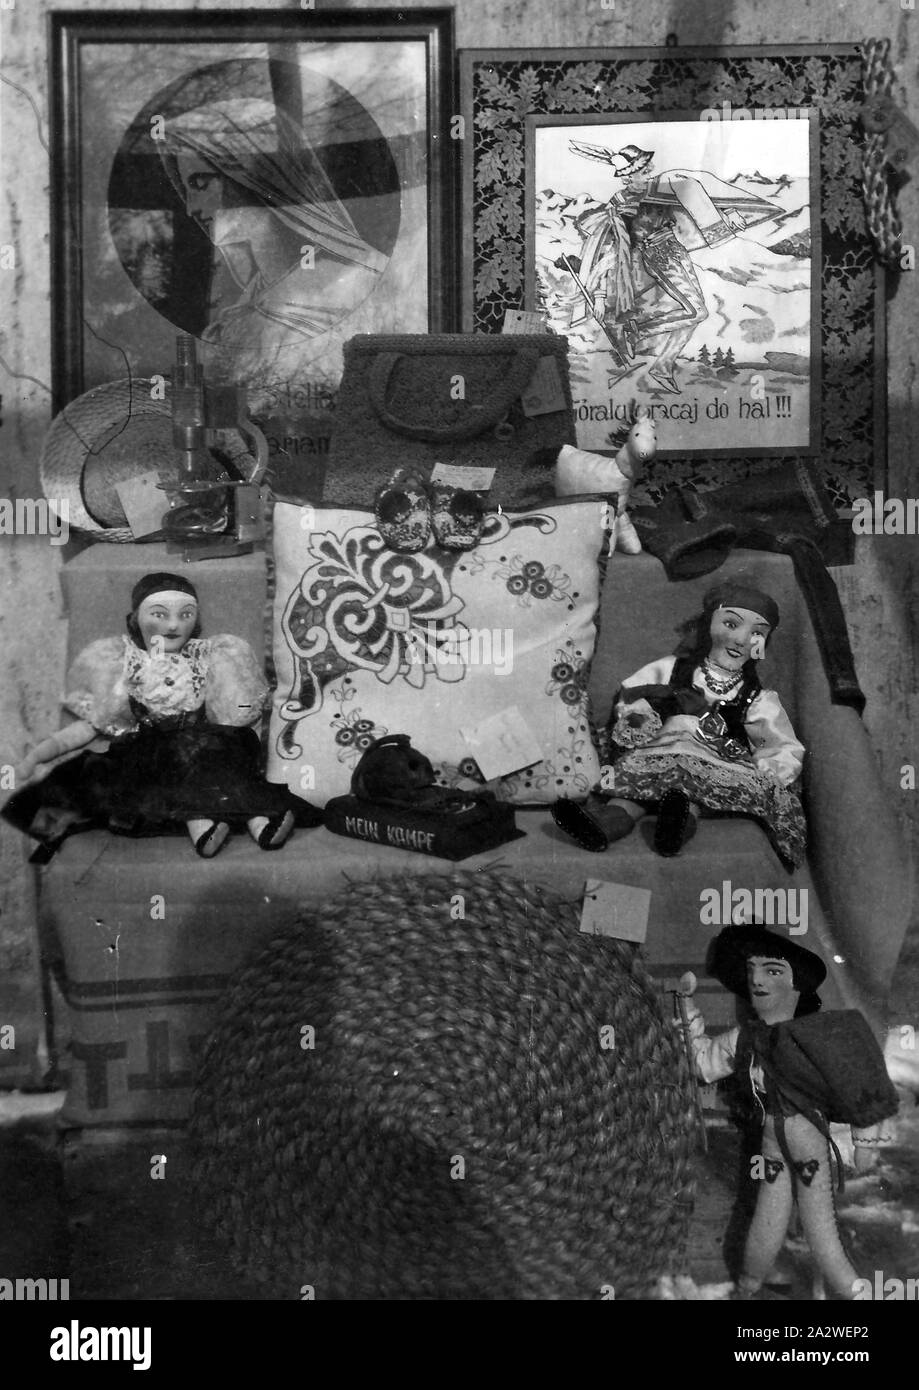 Photographie numérique - Affichage d'Artisanat, Camp de personnes déplacées, Salzgitter, Allemagne, 1946, photographie en noir et blanc d'un groupe d'artisanat sur l'affichage à un camp de personnes déplacées dans la région de Salzgitter en Allemagne, en 1946. C'est l'un d'une collection de 24 photographies prises par les membres du personnel de l'anglais Guide International Service (SIG), partie 107 de l'équipe de l'opération combinée des 112 militaires du Gouvernement, l'UNRRA [United Nations Relief and Rehabilitation Administration Banque D'Images